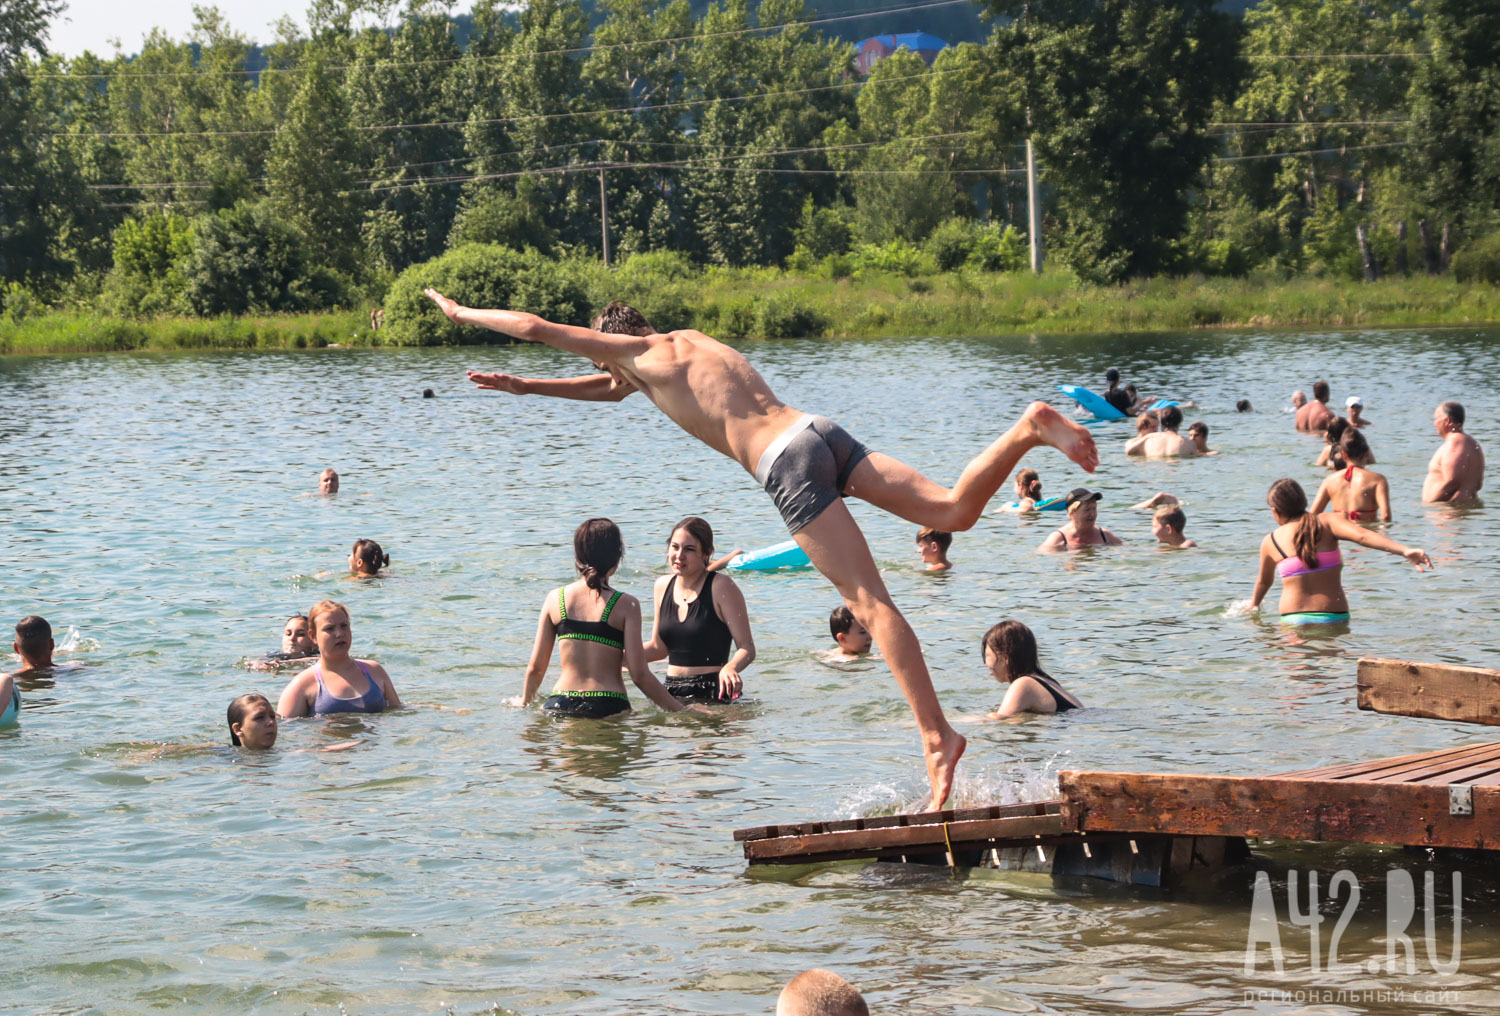 Соцсети: на Красном озере в Кемерове заметили онаниста